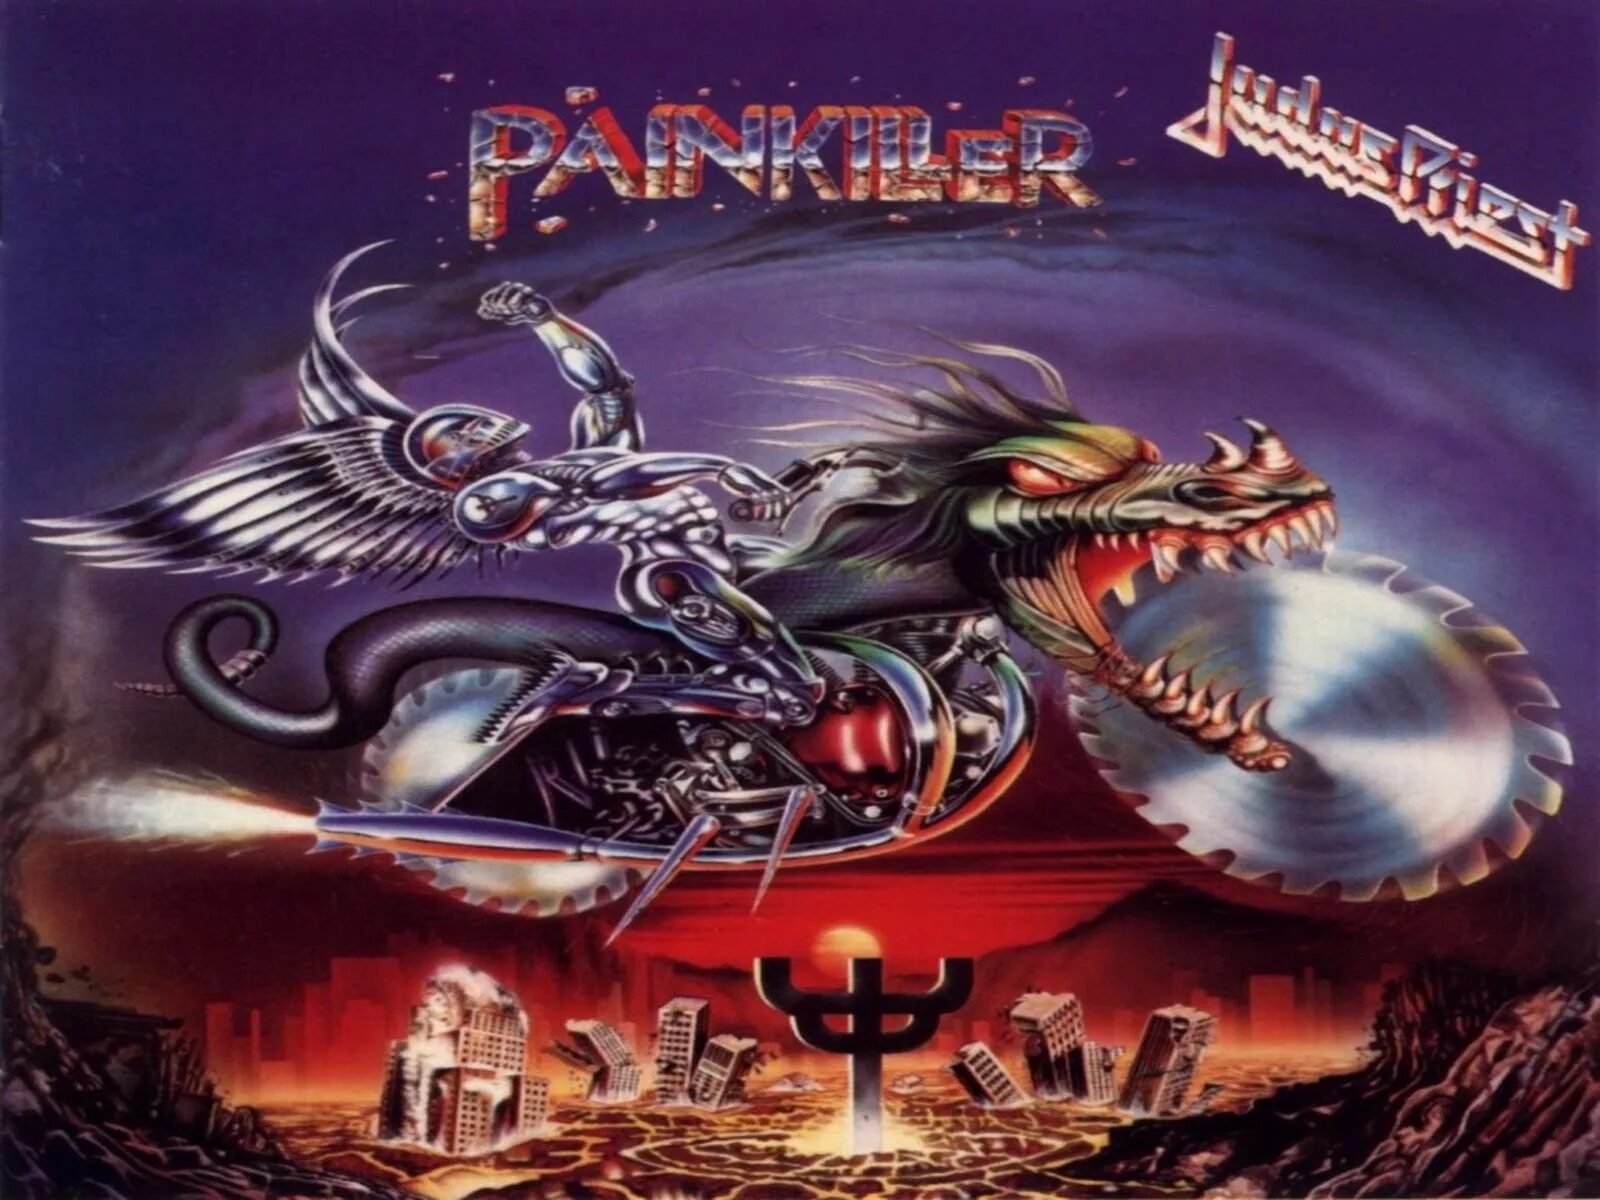 Группа judas priest альбомы. Judas Priest Painkiller 1990. Judas Priest "Painkiller". Judas Priest Painkiller обложка. Judas Priest 1990 Painkiller обложка альбома.